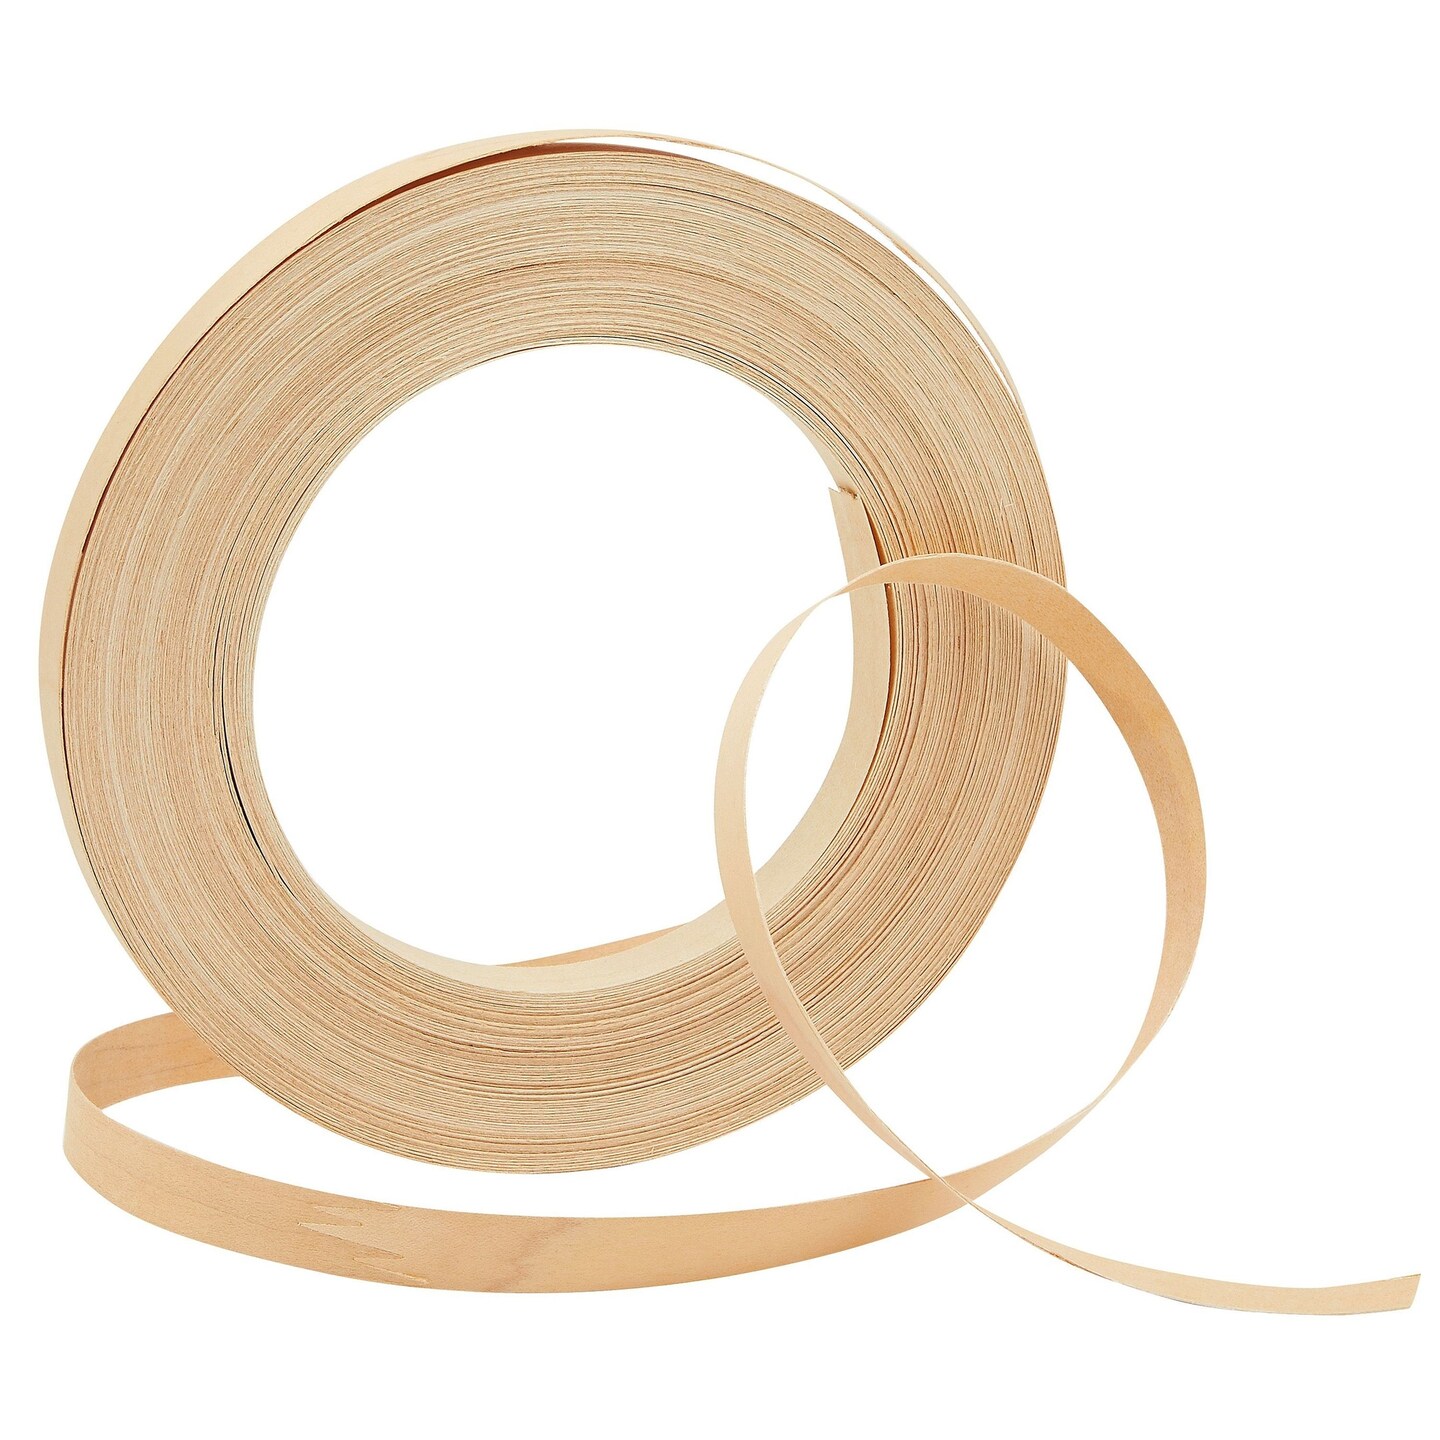 Bamboo Material DIY Weaving Furniture Basket Making Supplies